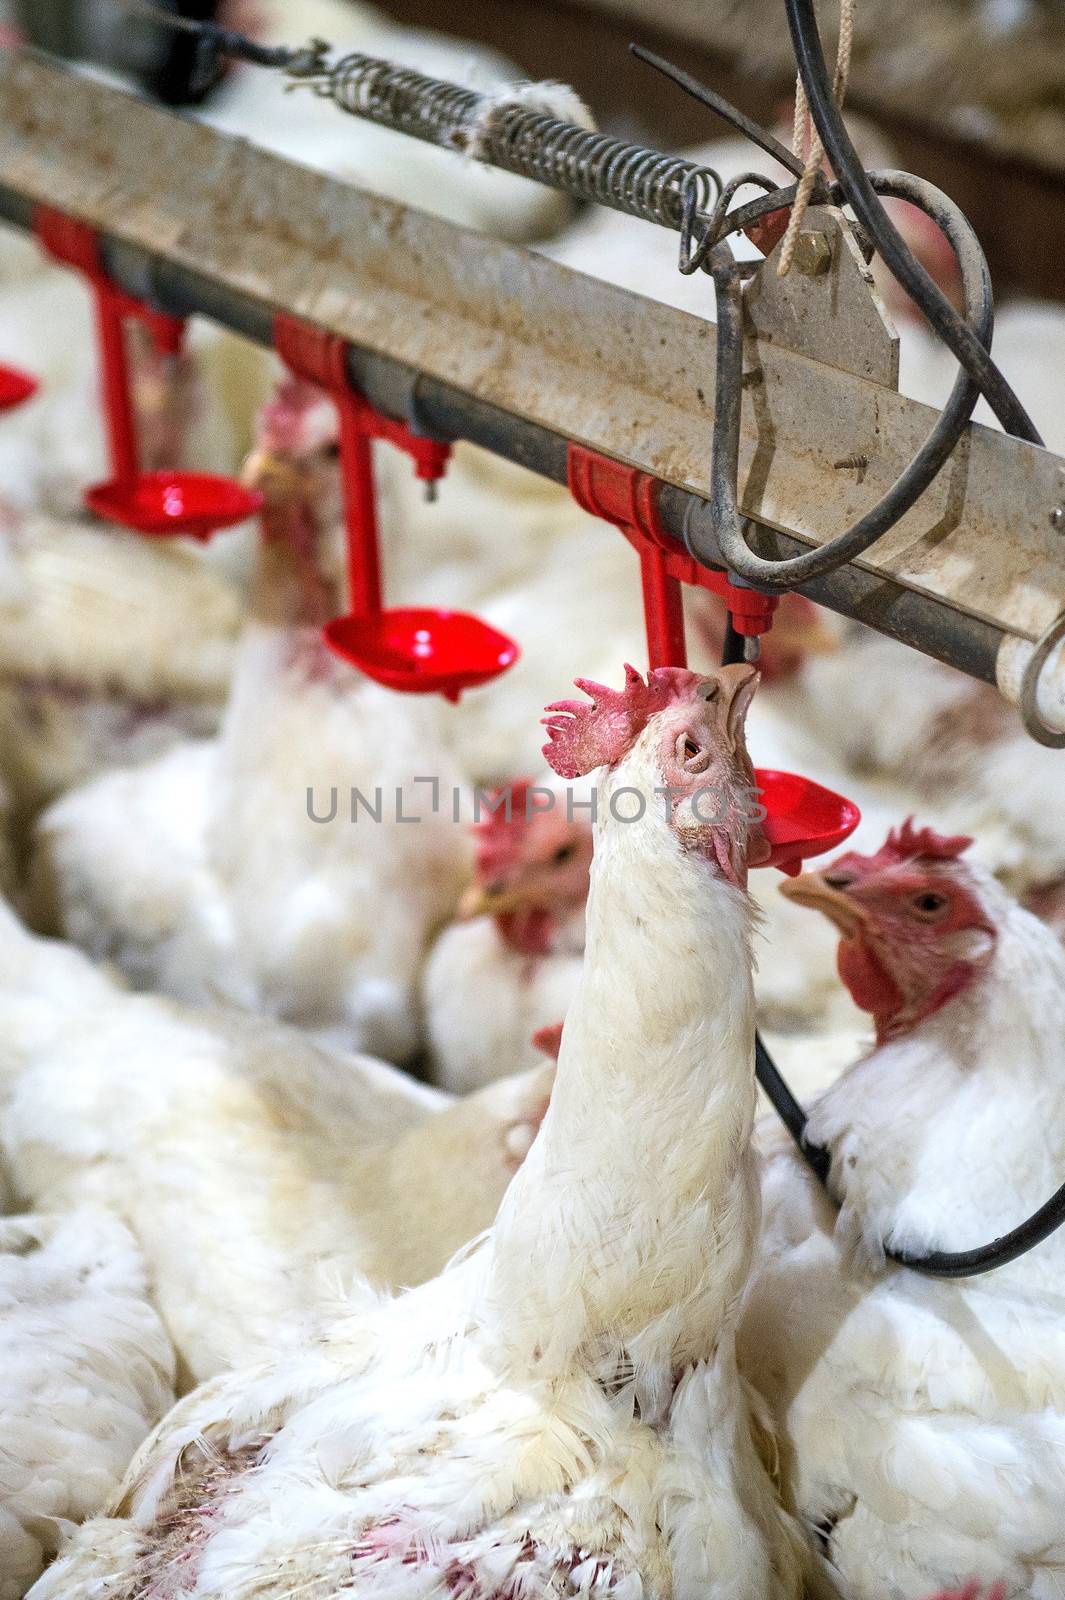 Sick chicken or Sad chicken in farm,Epidemic, bird flu, health problems. by gutarphotoghaphy